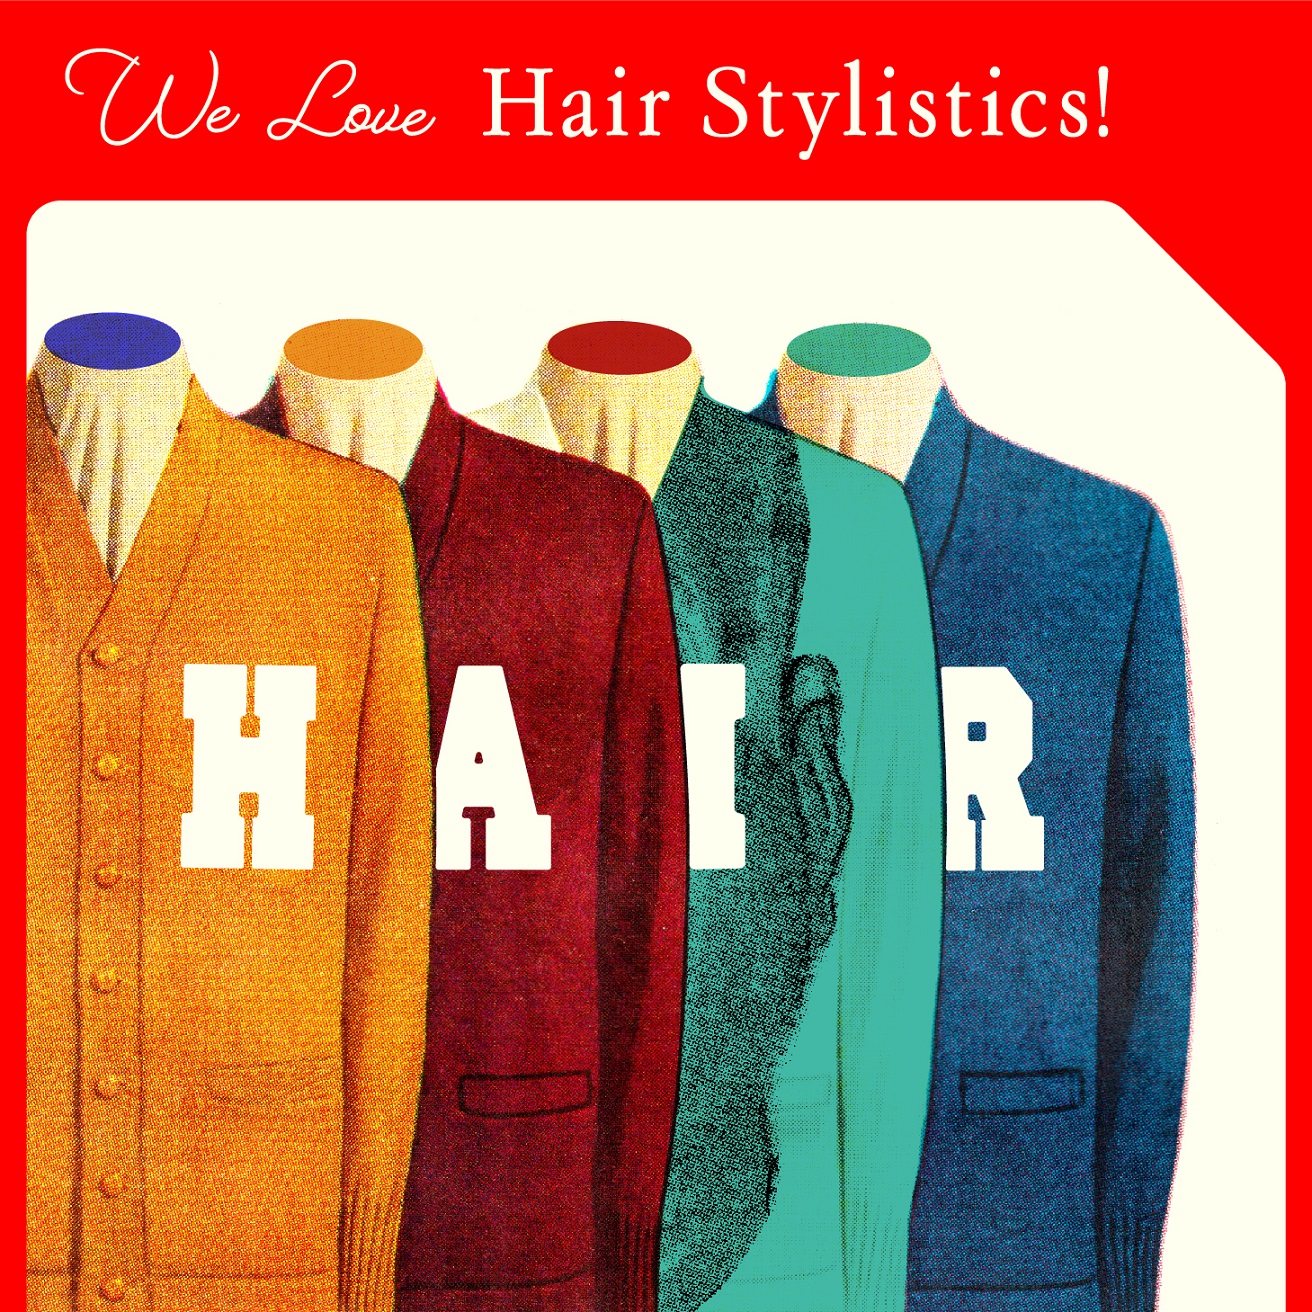 入院中の中原昌也の支援コンピ『WE LOVE Hair Stylistics!』にCornelius、坂本慎太郎、ジム・オルークらが参加